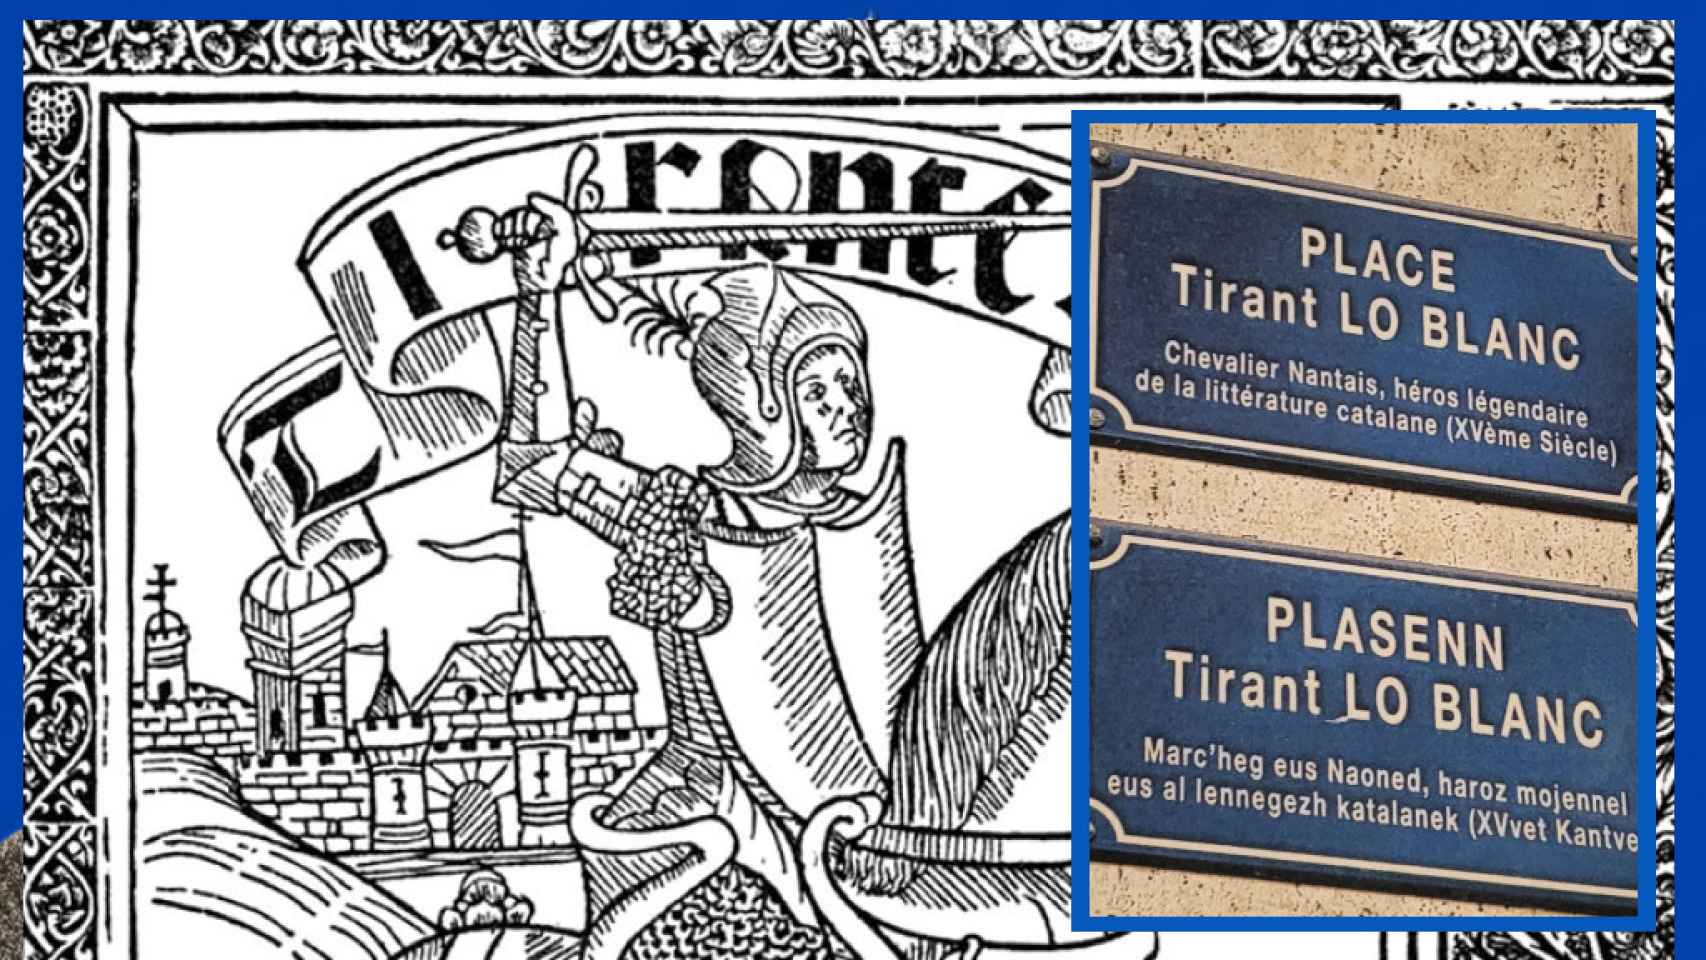 Portada del libro valenciano 'Tirant lo Blanch' y carteles en la ciudad de Nantes, Francia.